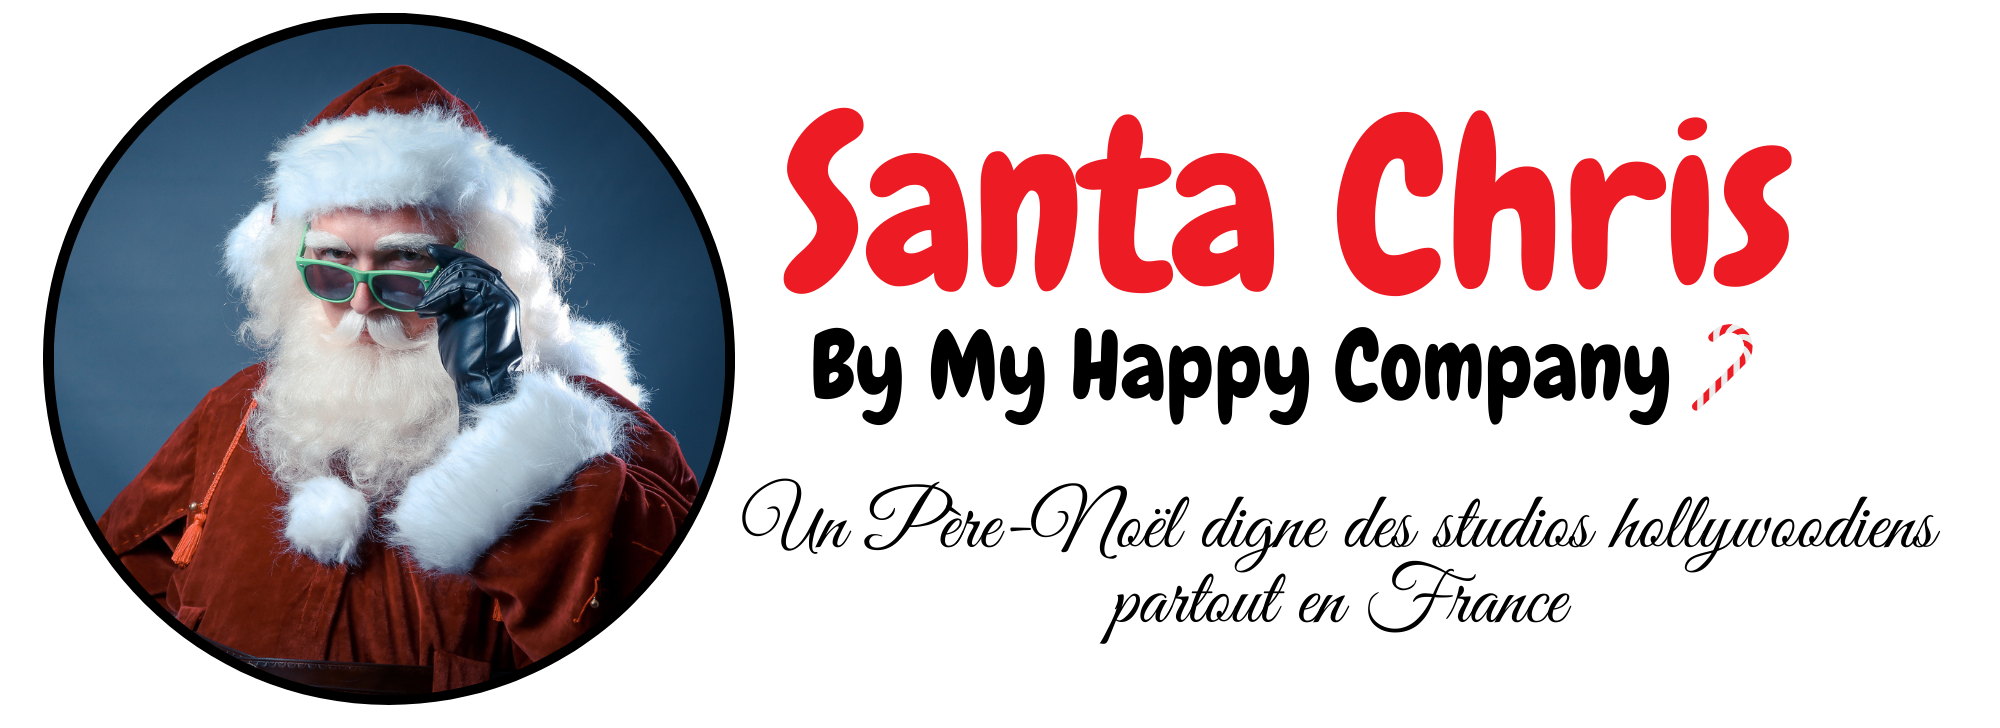 Santa Chris by My Happy Company